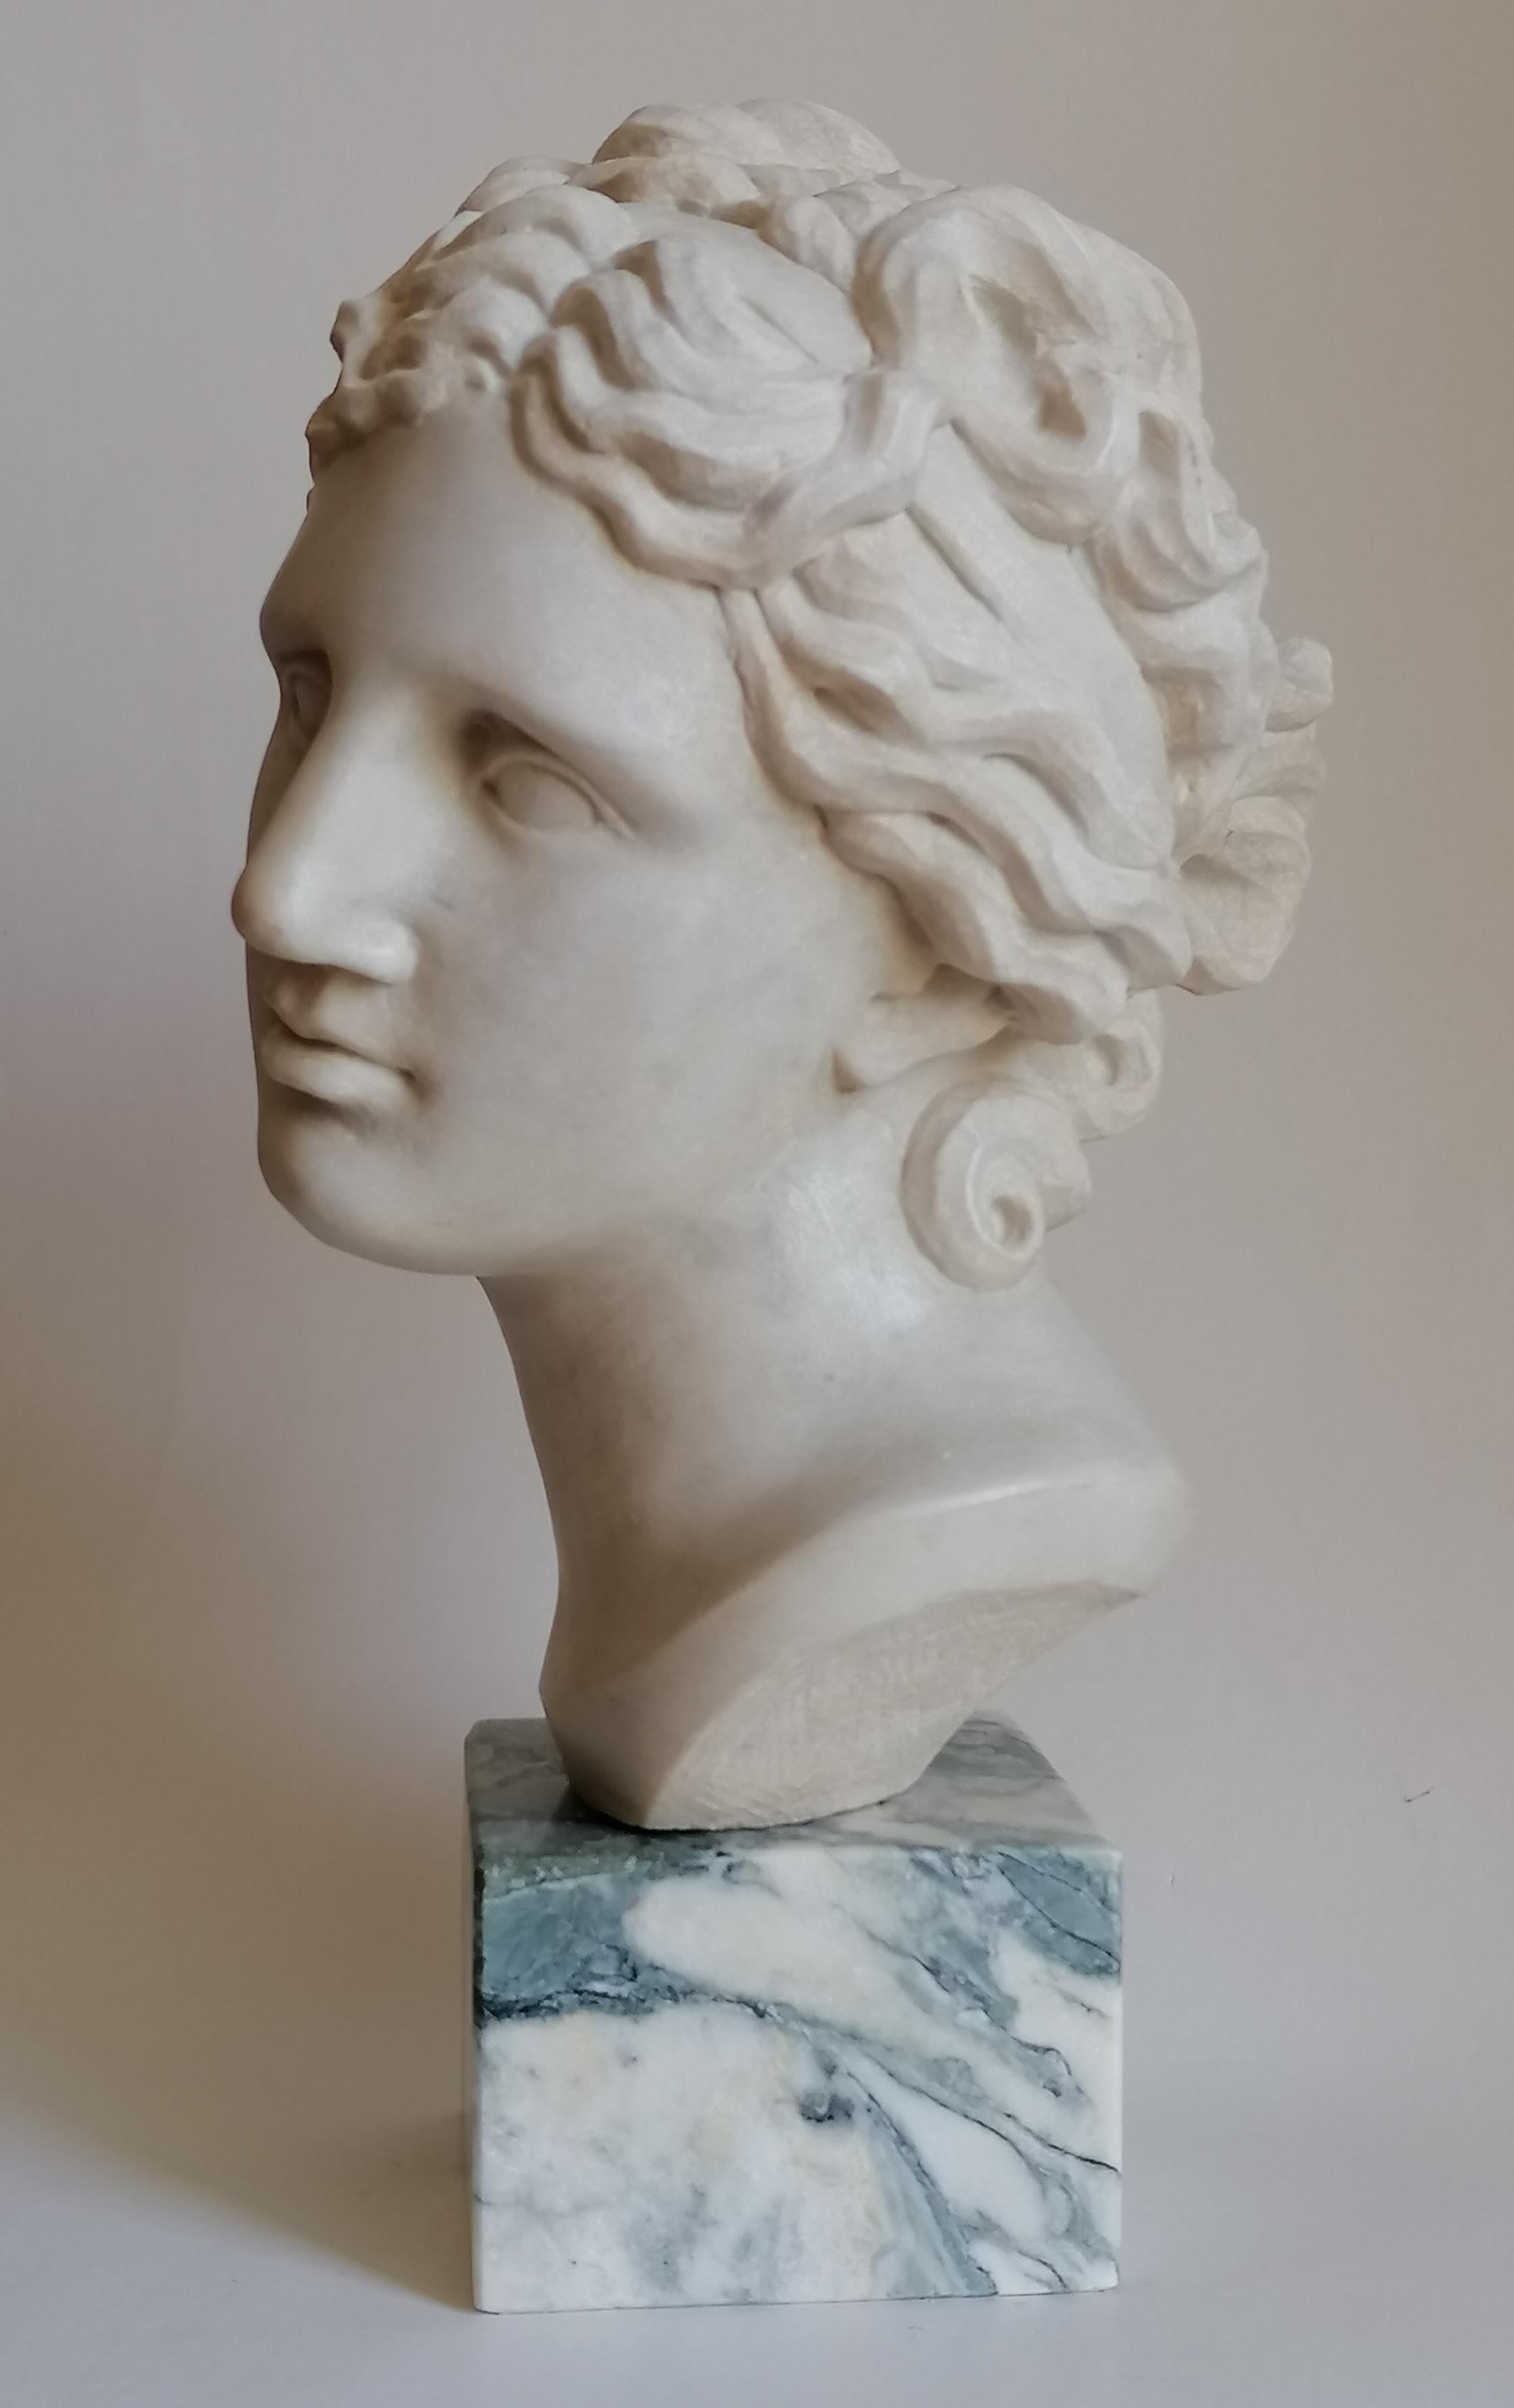 Italian Venere Medici -testa scolpita su marmo bianco di Carrara - fabriqué en Italie en vente